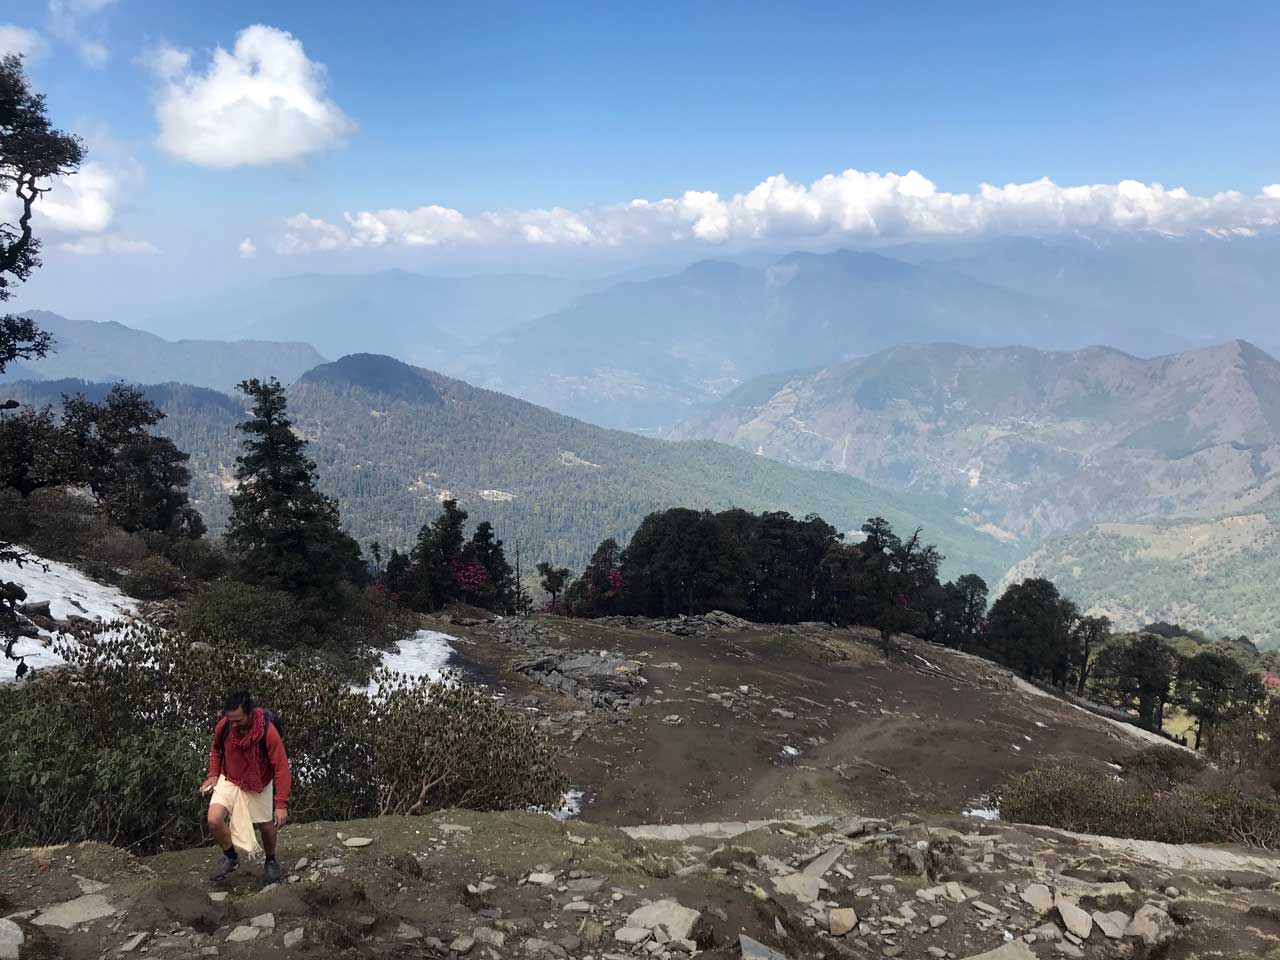 yoganga.org - YogAnga Himalayan Retreat - hiking, trekking, meditation, yoga, kirtan, pilgrimage, yatra, himalayan tours in Uttarakhand with Santosh Puri Ashram